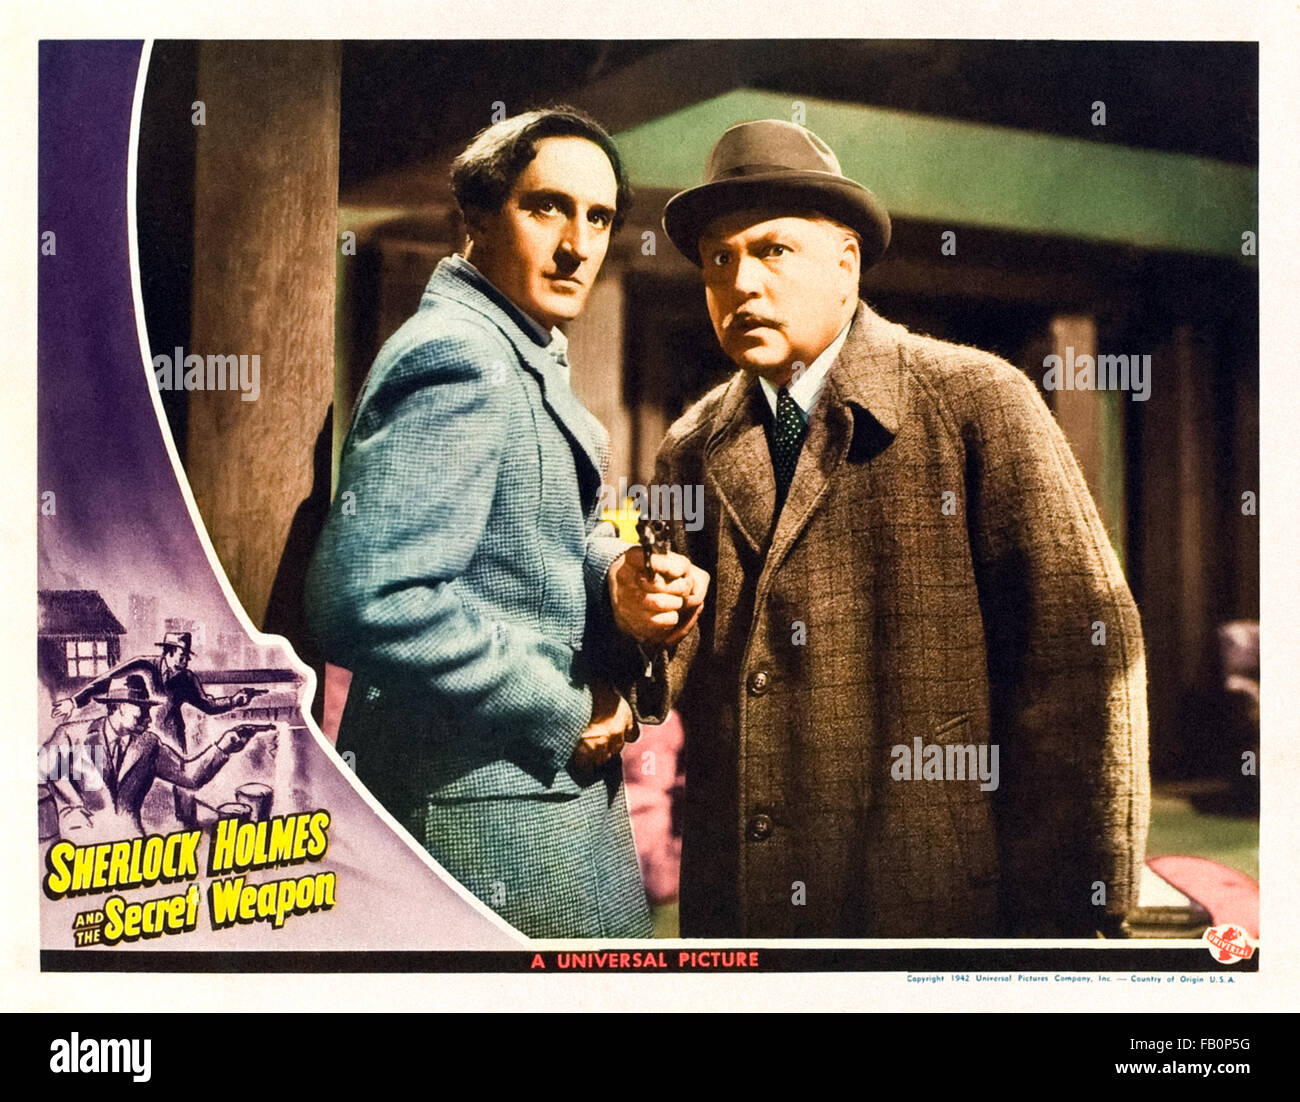 Tarjeta de lobby para 'Sherlock Holmes y el Arma Secreta" de 1942 Sherlock Holmes película dirigida por Roy William Neill y protagonizada por Basil Rathbone (Holmes) y Nigel Bruce (Watson). Foto de stock